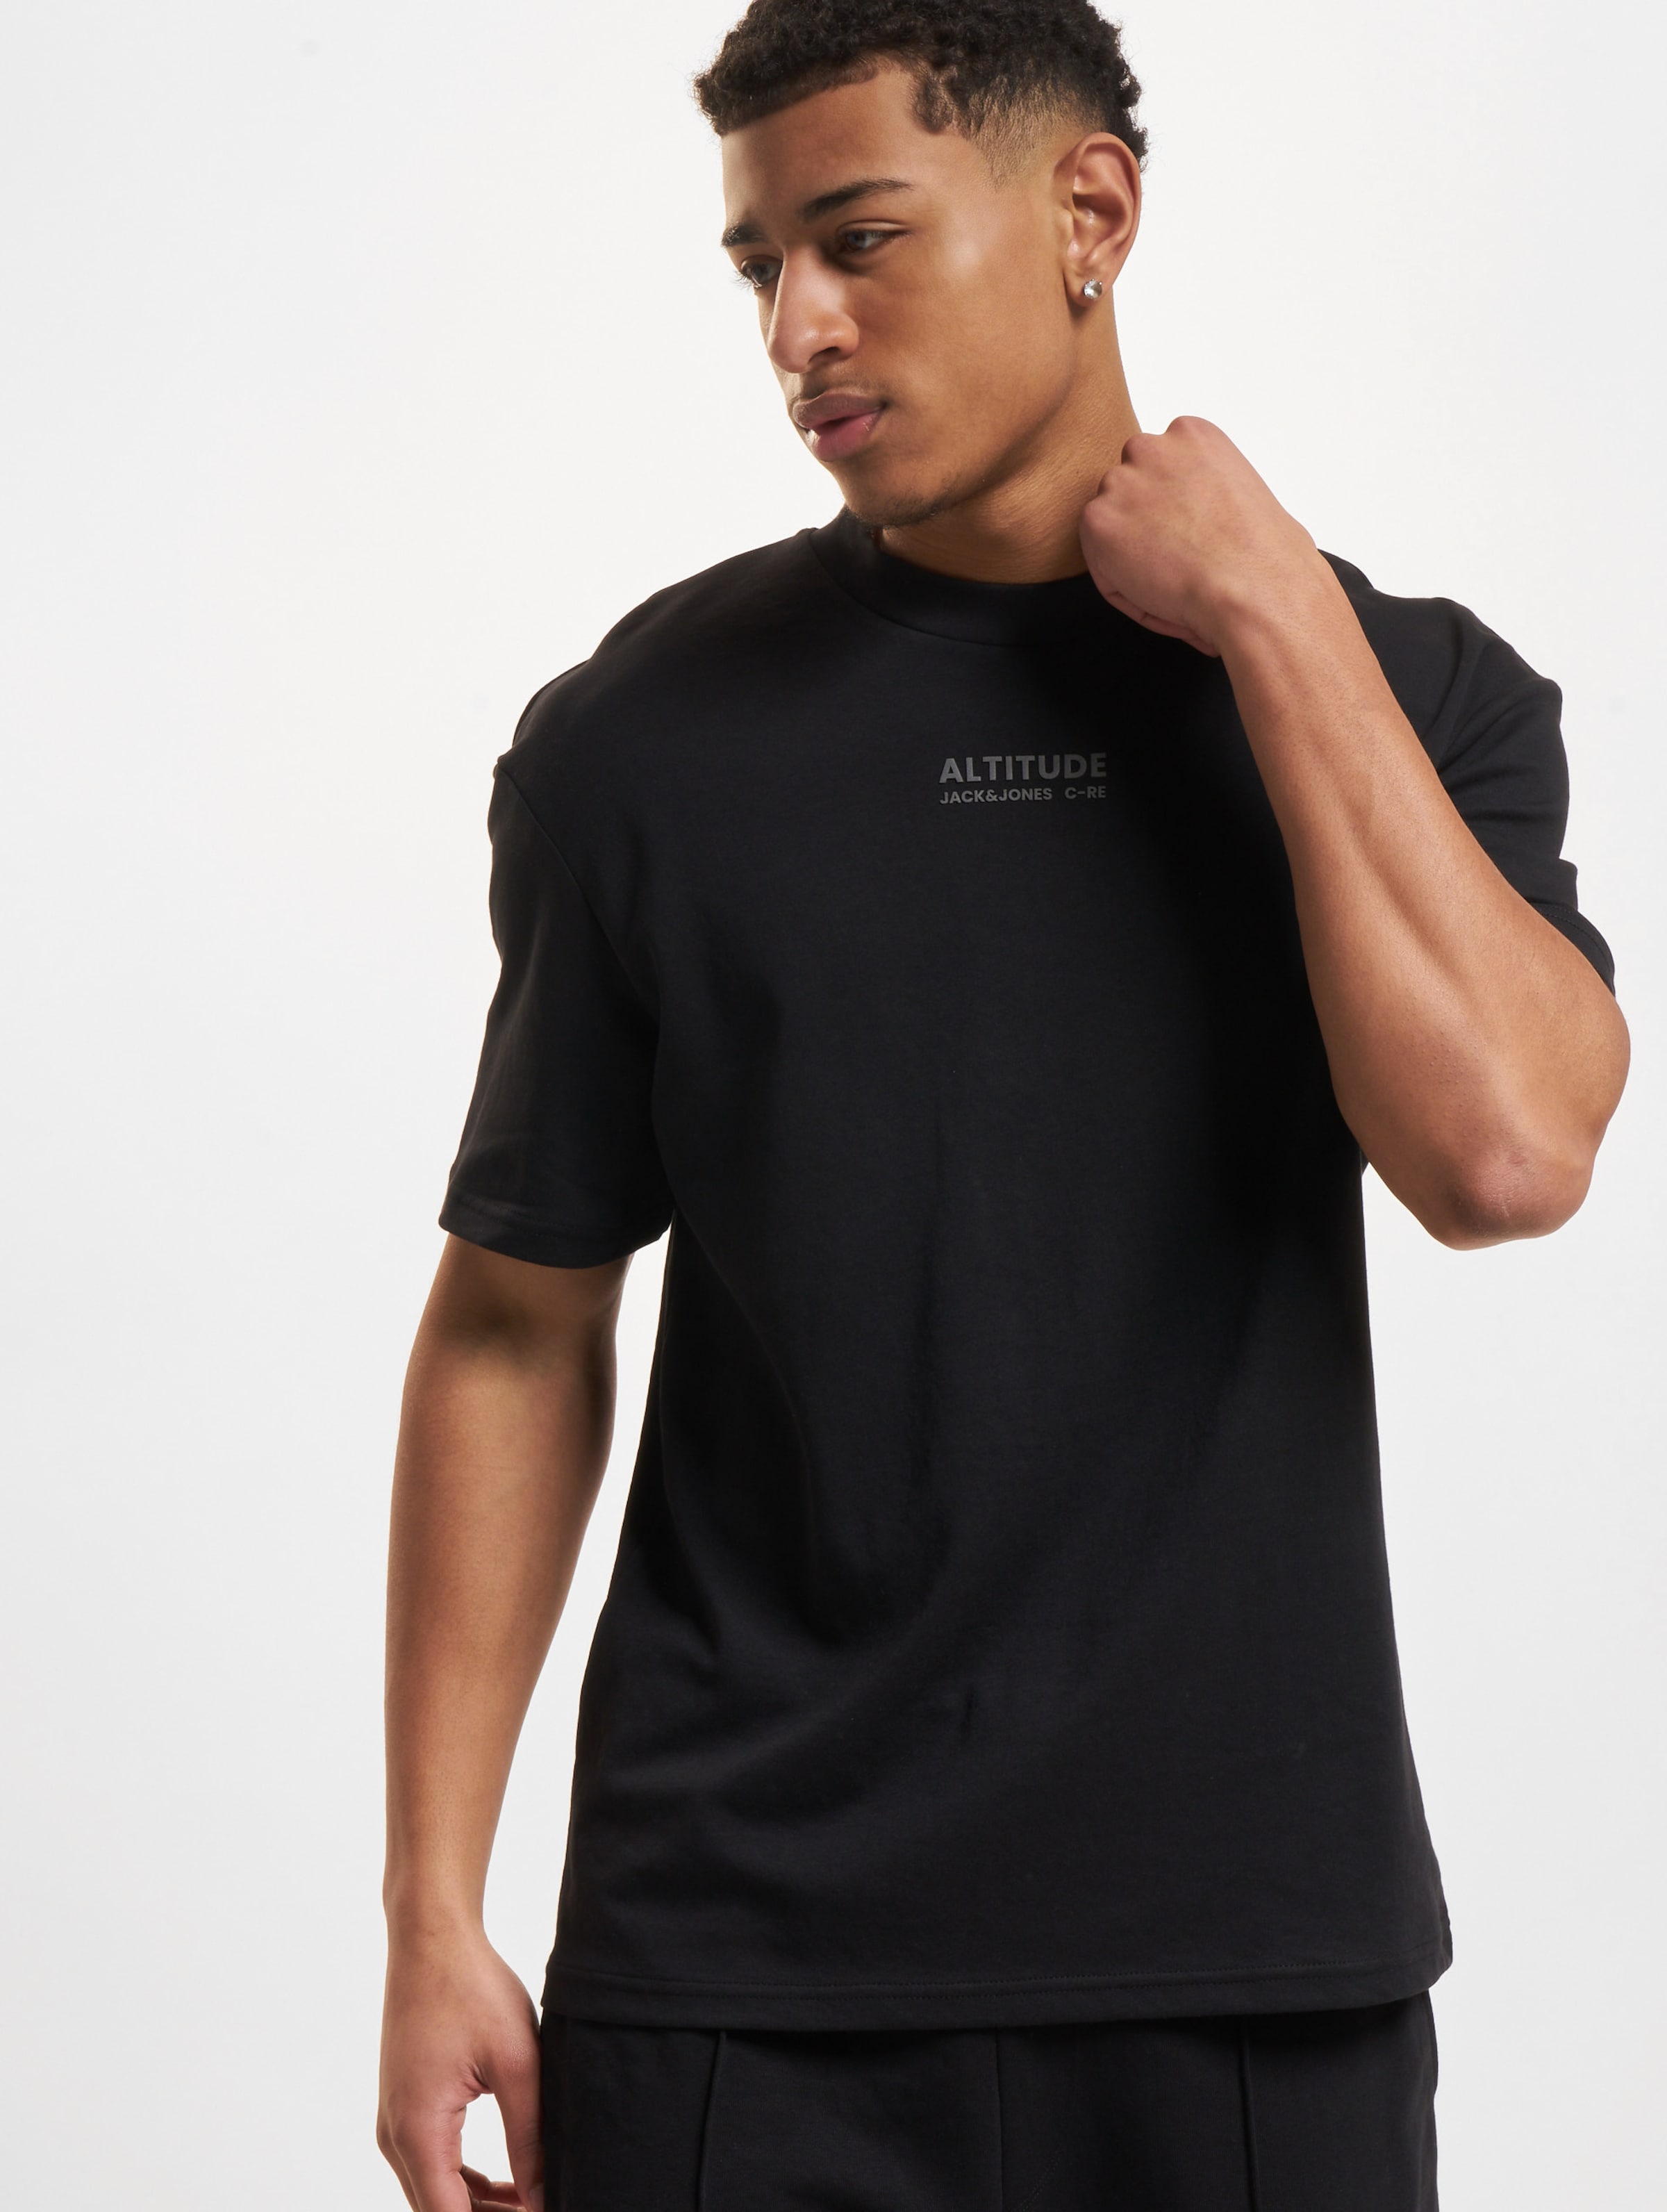 Jack & Jones Altitude Crew Neck T-Shirt Mannen,Unisex op kleur zwart, Maat L